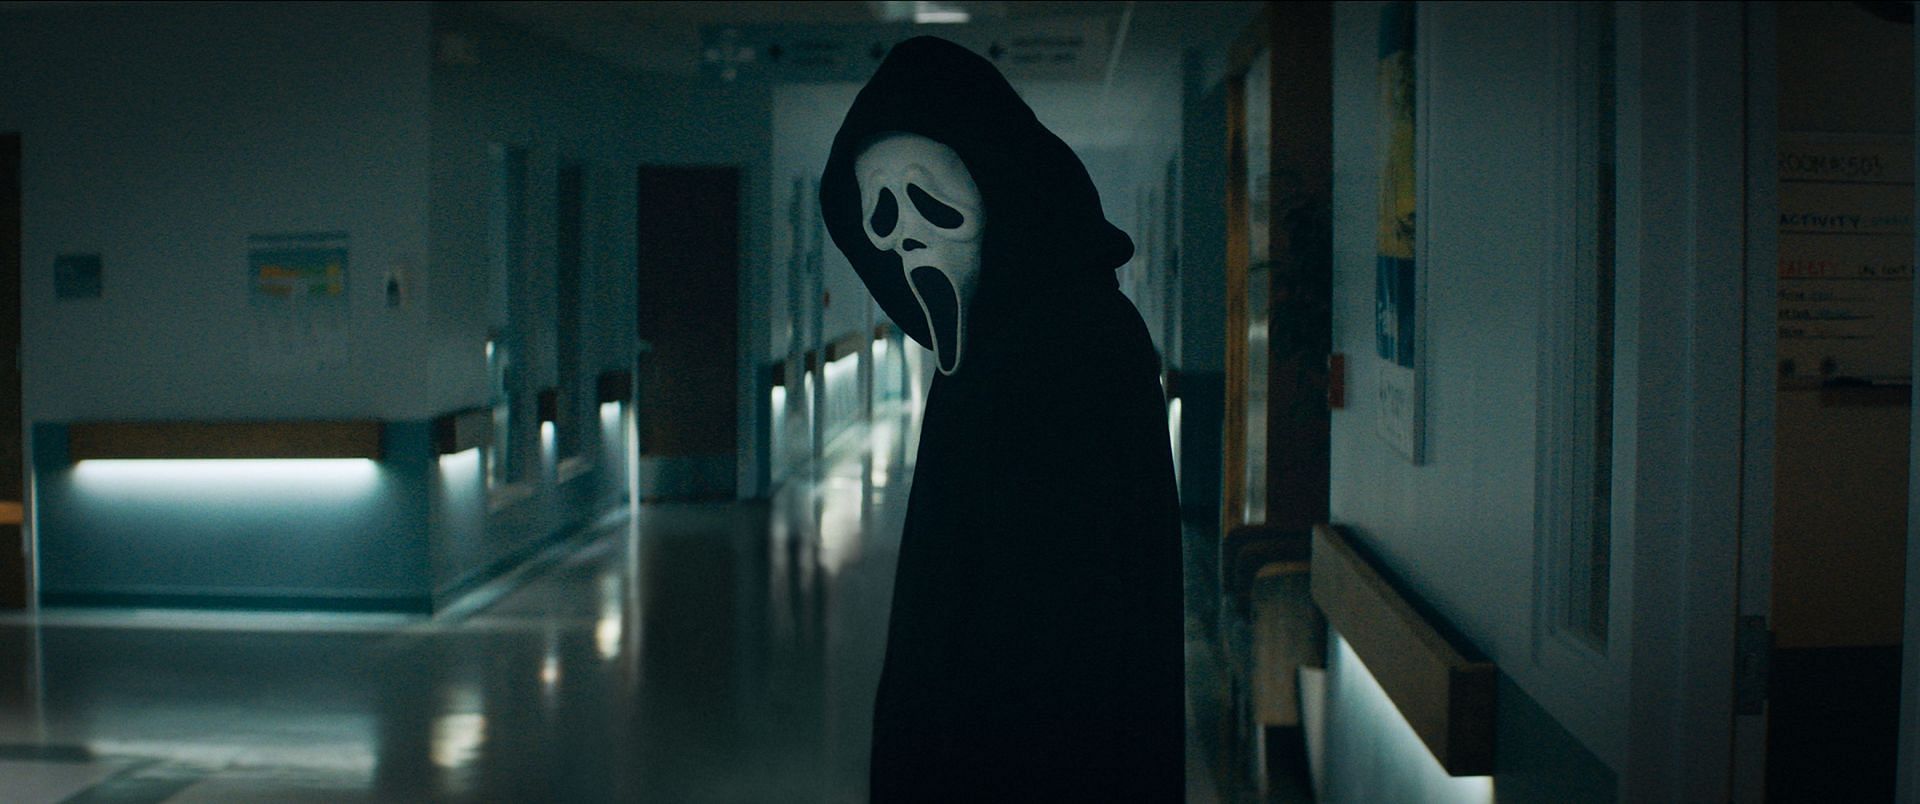 A still from Scream (Image via IMDb)